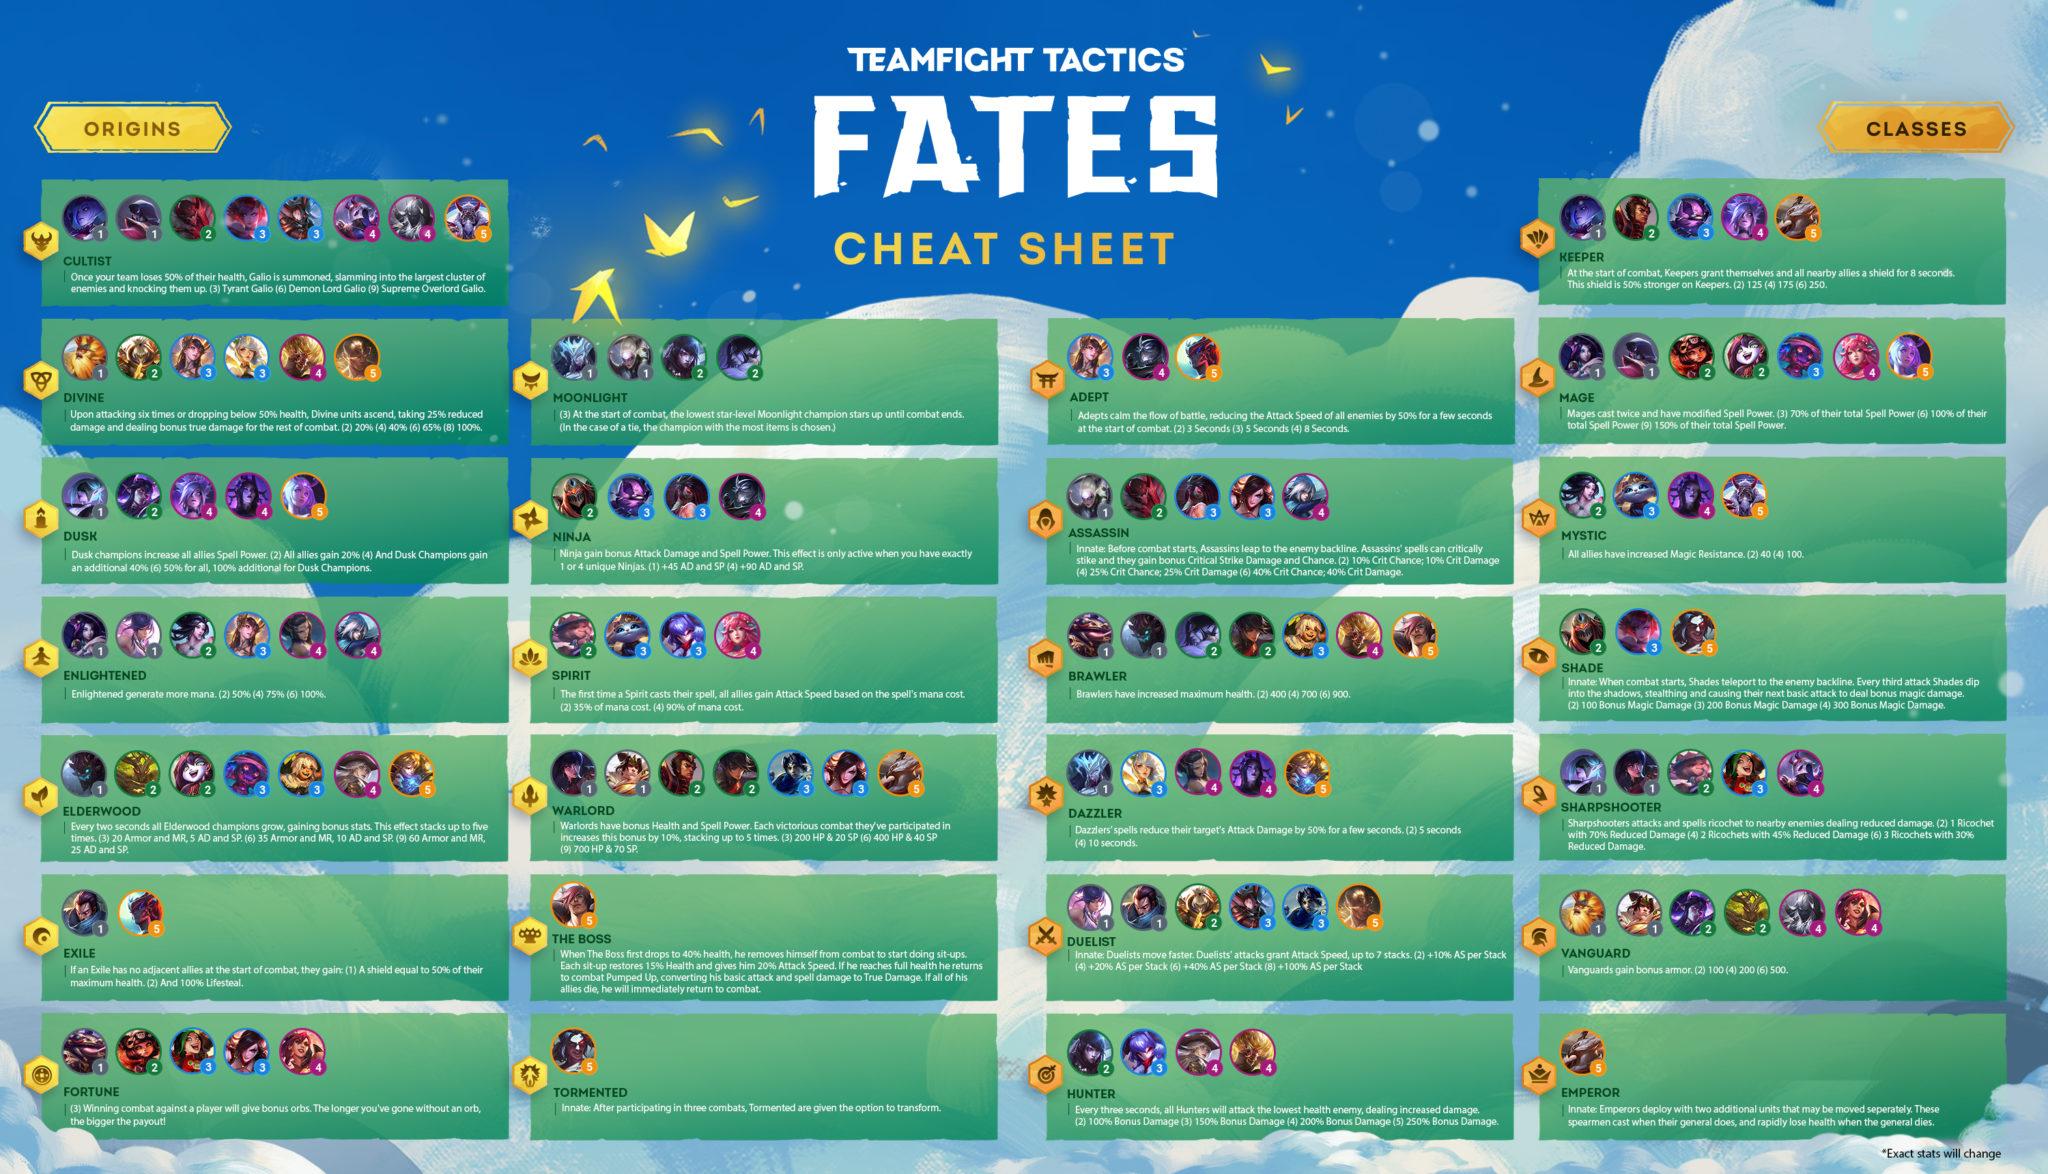 Set 4 Fates cheat sheat